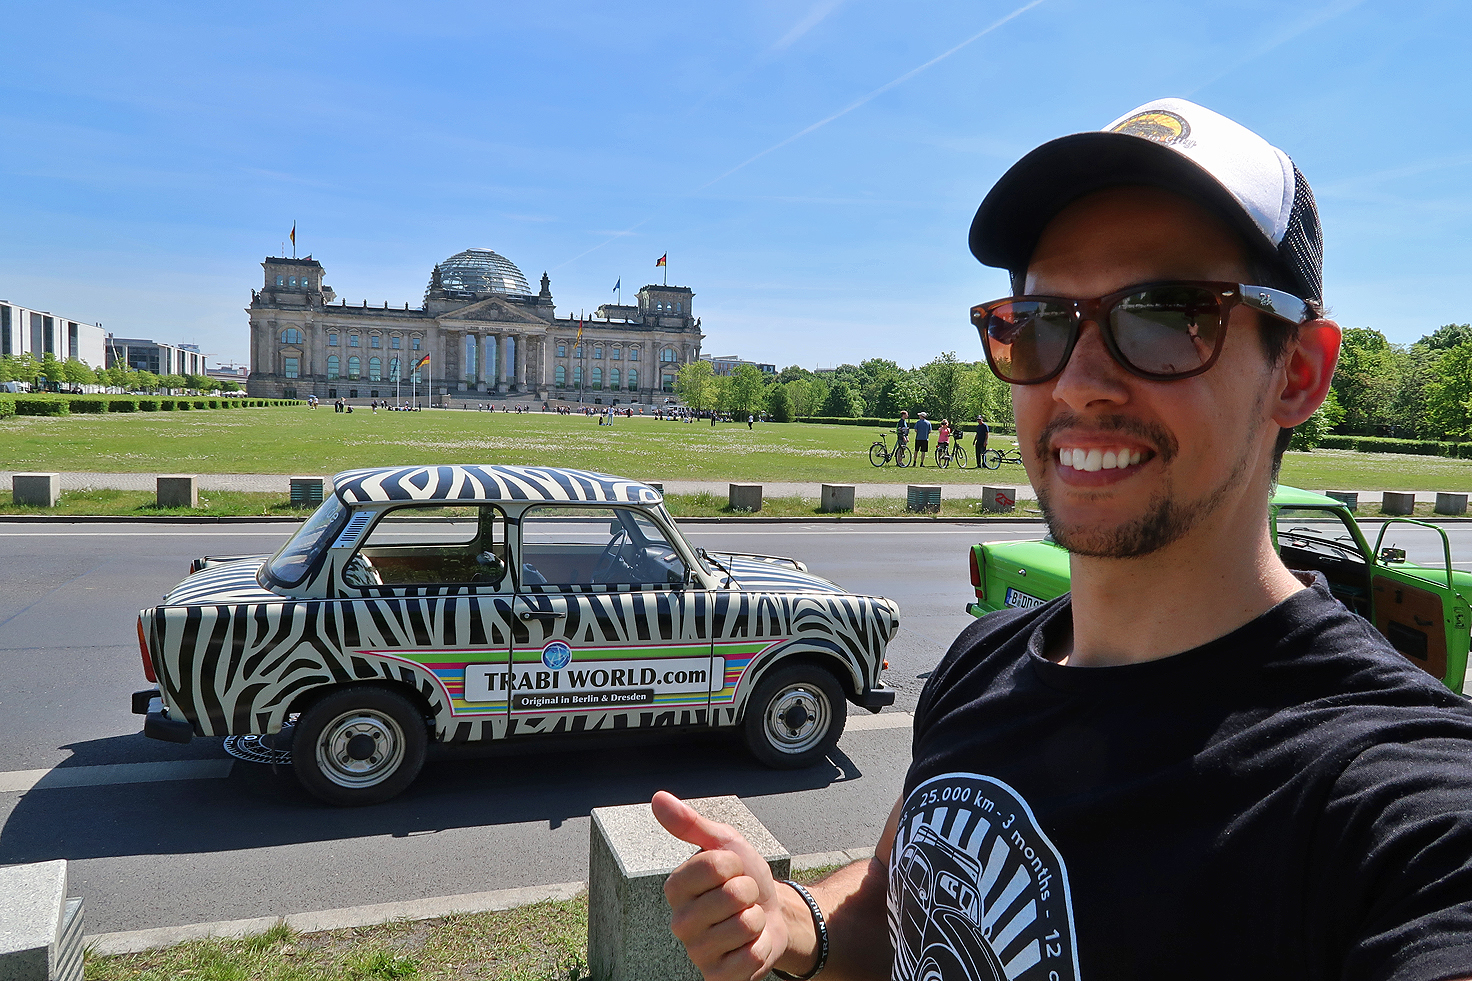 My Experiences with Trabi Safari World in Berlin